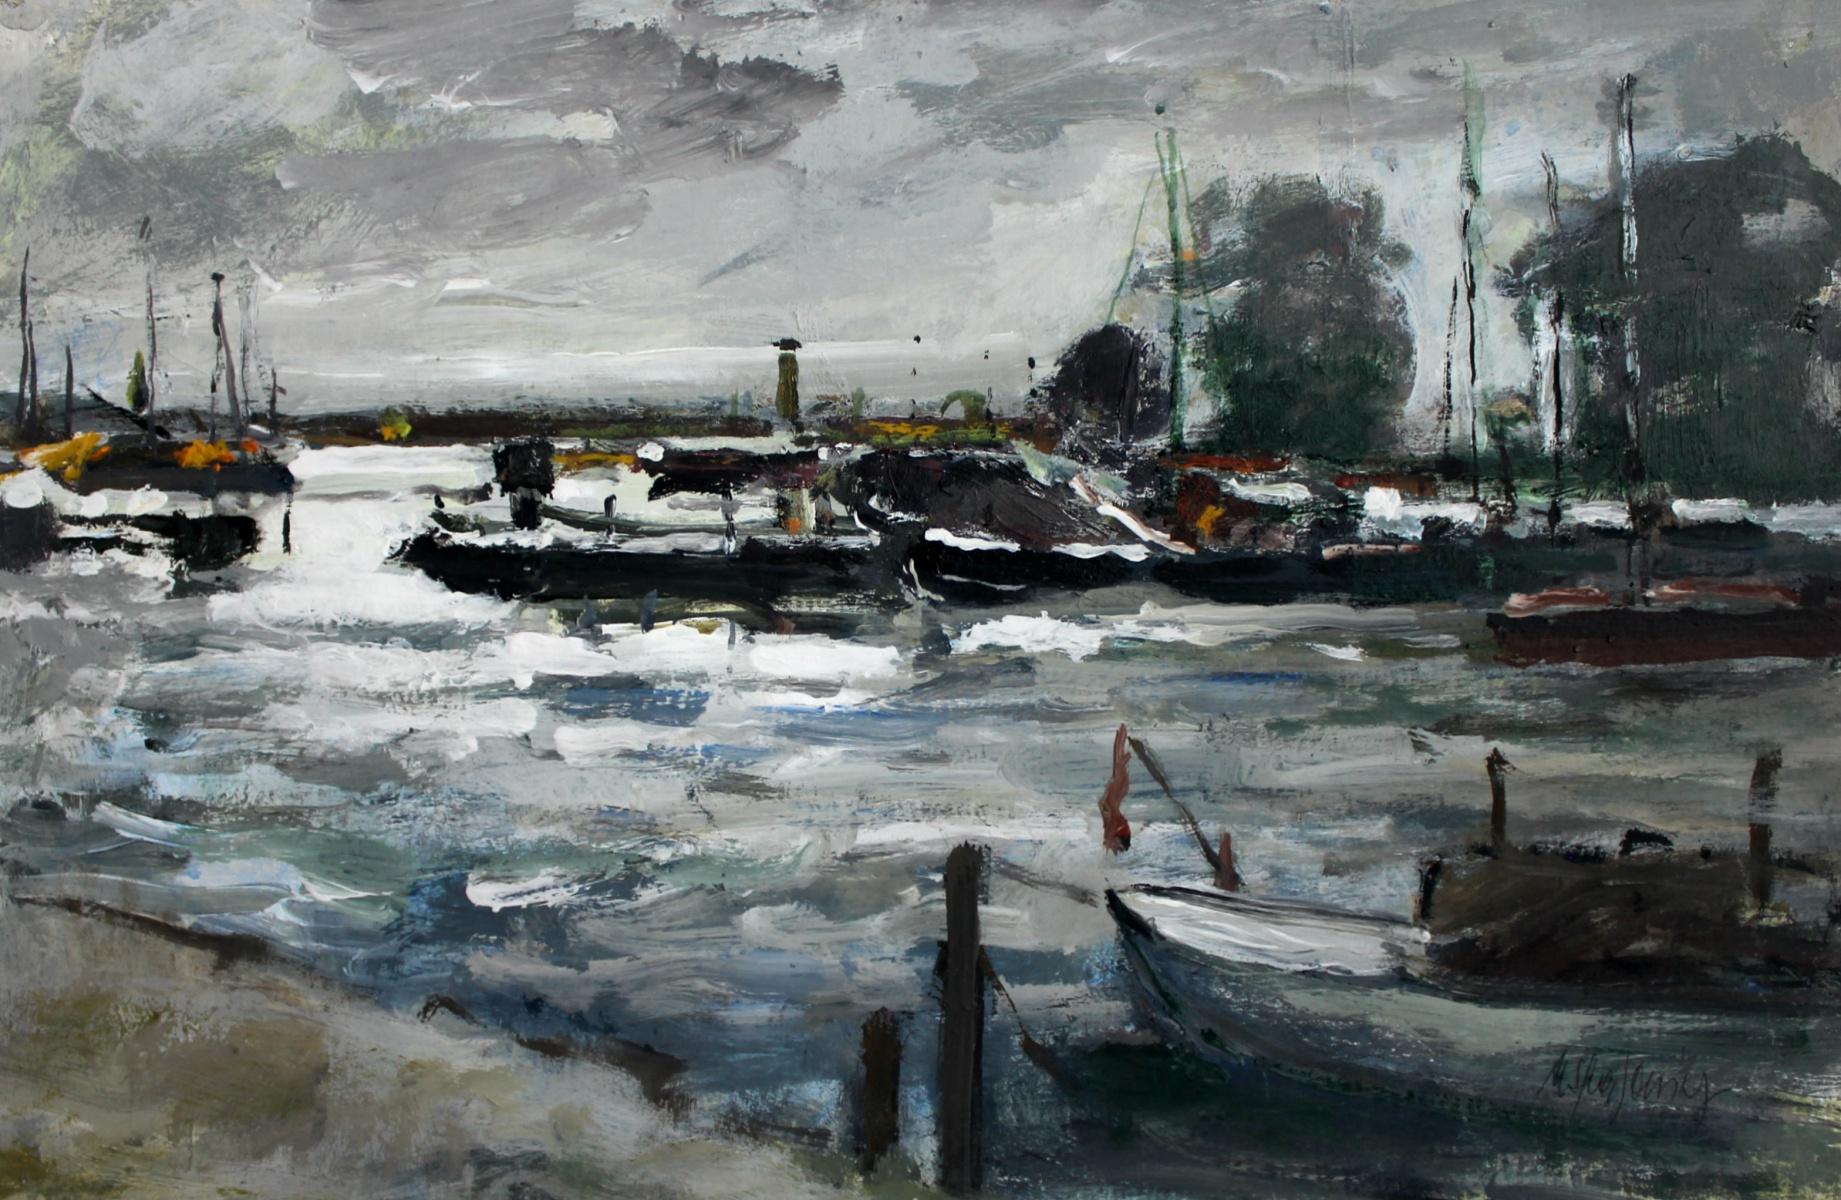 Boats - Peinture à l'huile, figurative, paysage, couleurs sourdes, impressionnisme